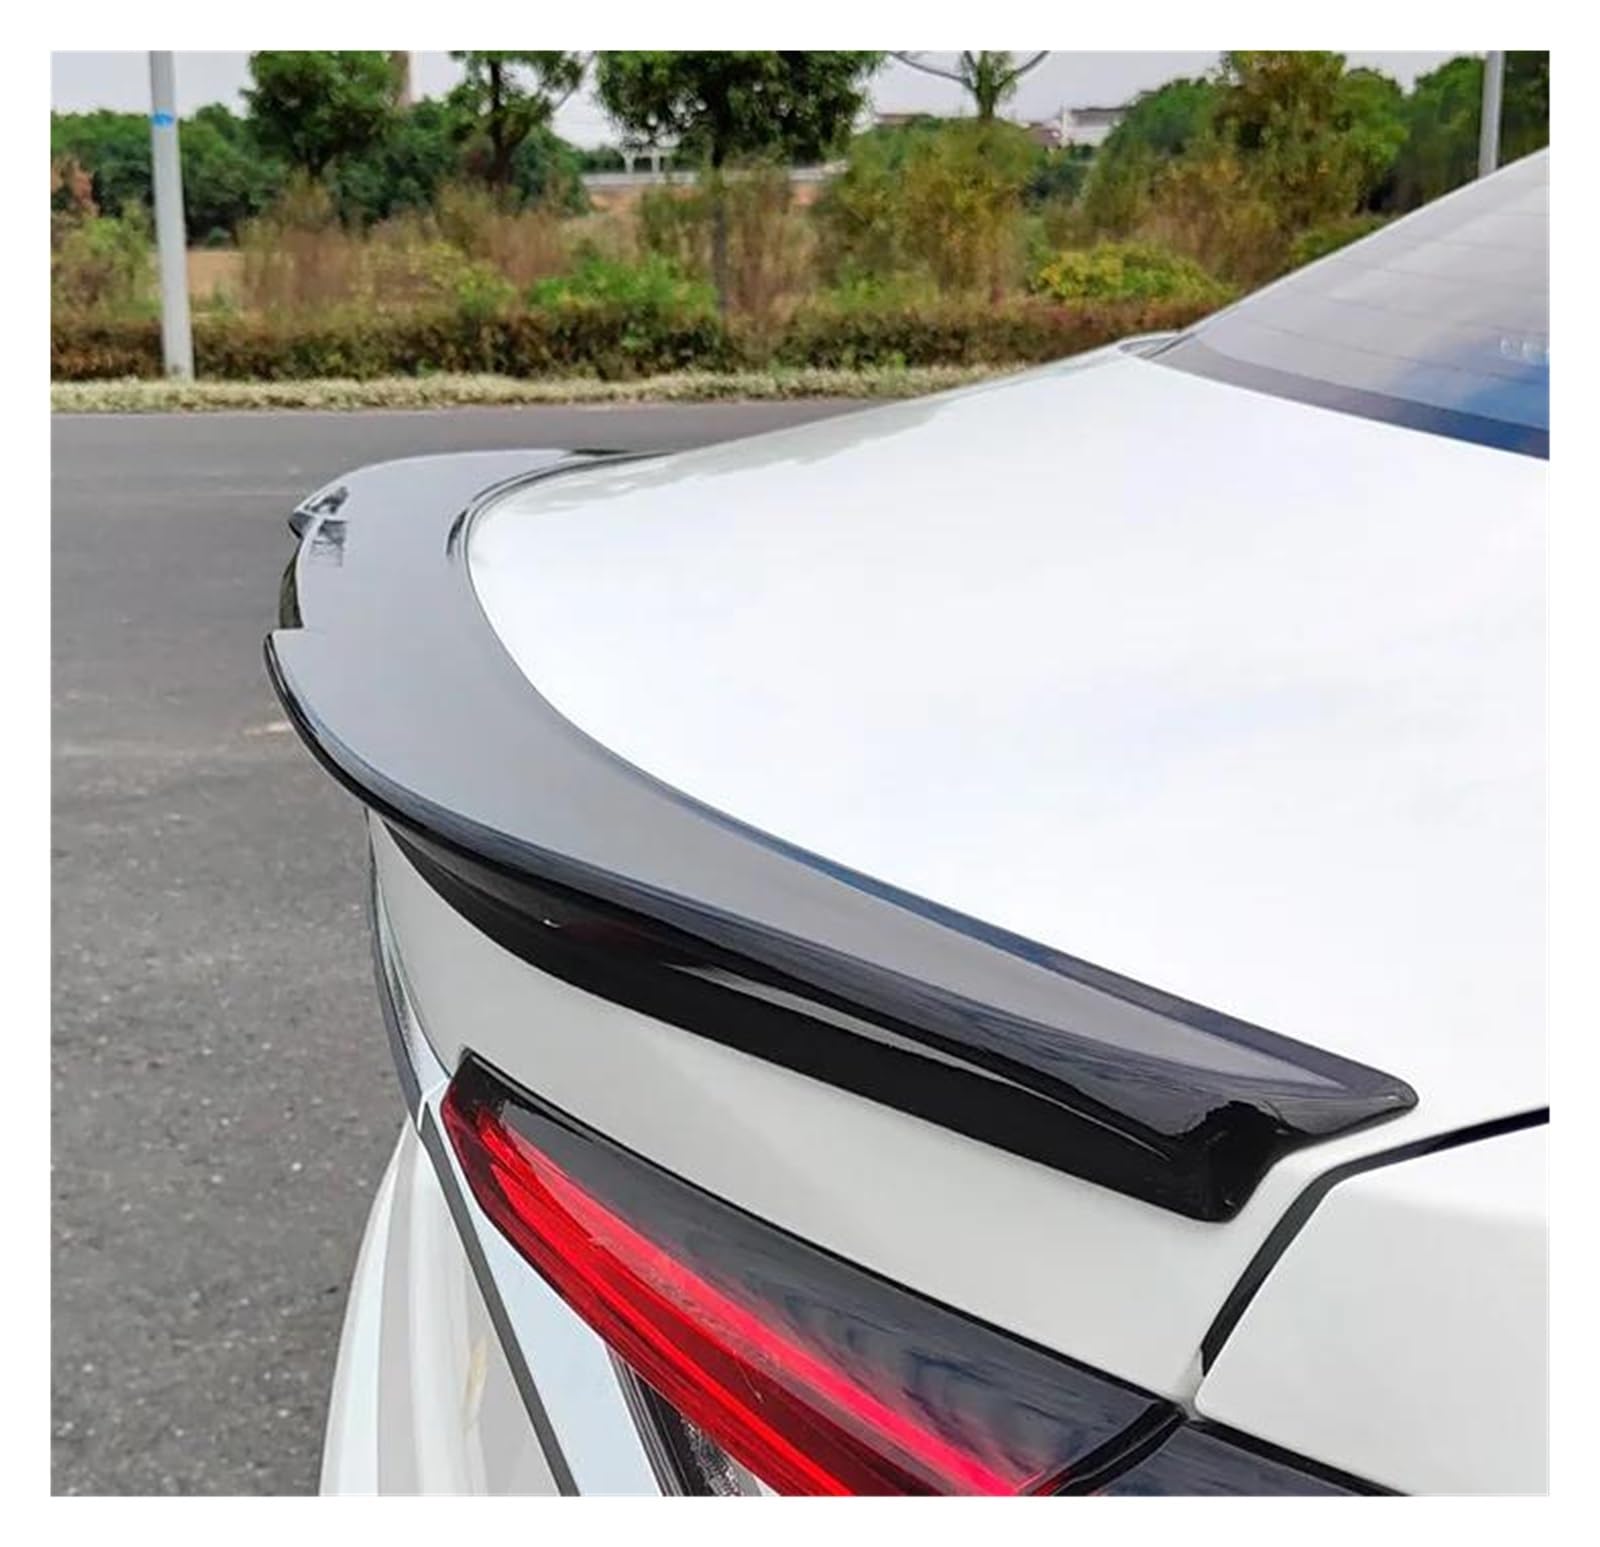 Spoiler Wing Auto Zubehör Spoiler Für Toyota Für Corolla 2019 2020 2021 Limousine Auto Stamm Hinten Lip Flügel Schwanz FIN Refit ABS Material Heckspoiler(Trunk Glossy Black) von UFITIDU